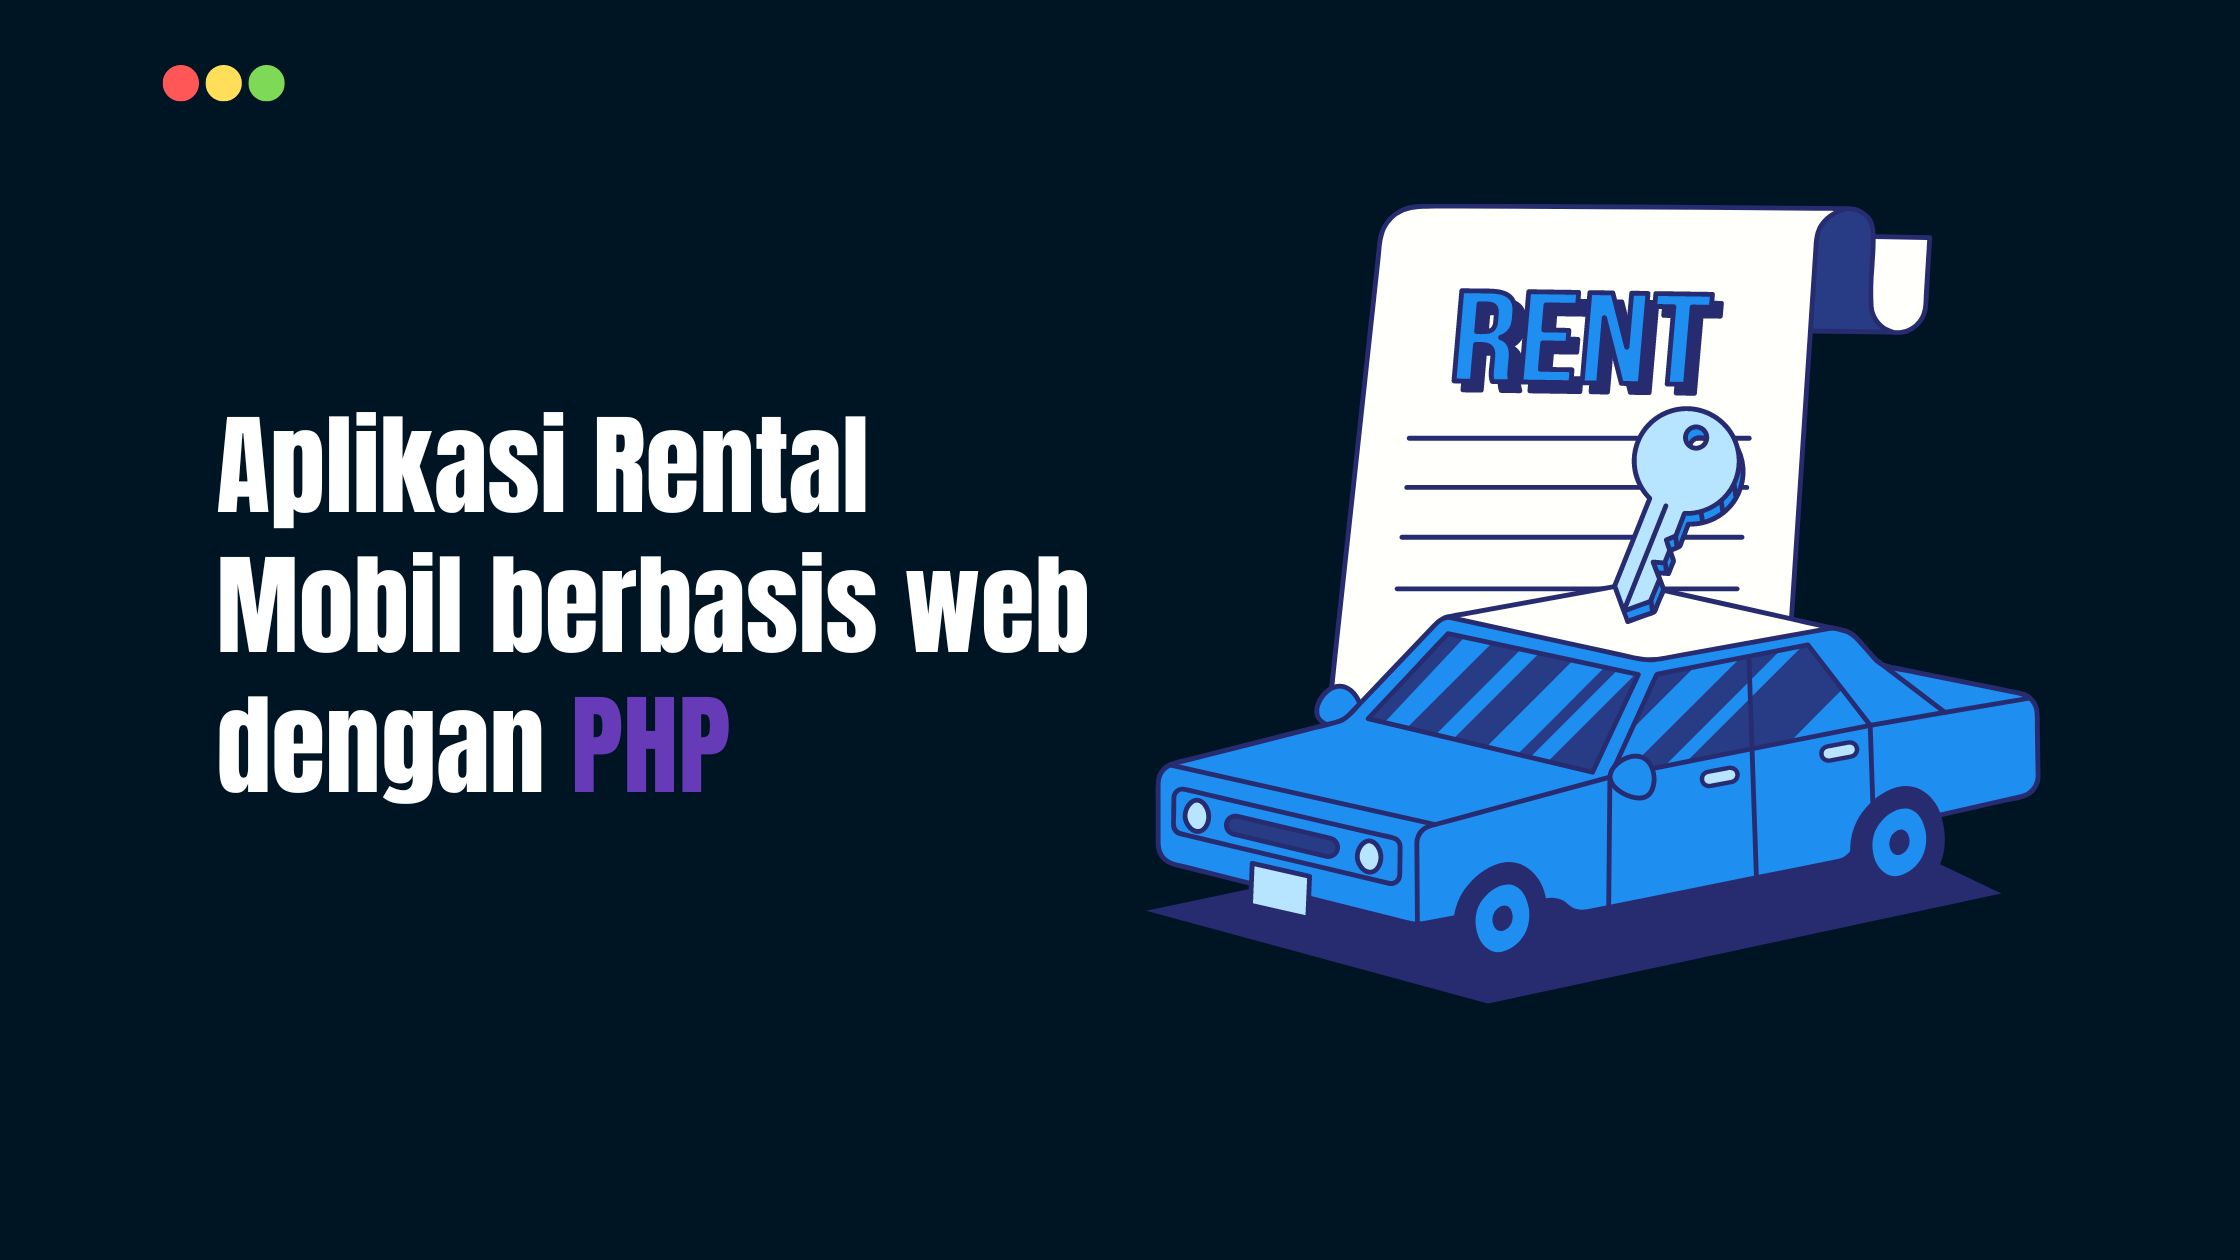 Aplikasi Rental Mobil berbasis web dengan PHP